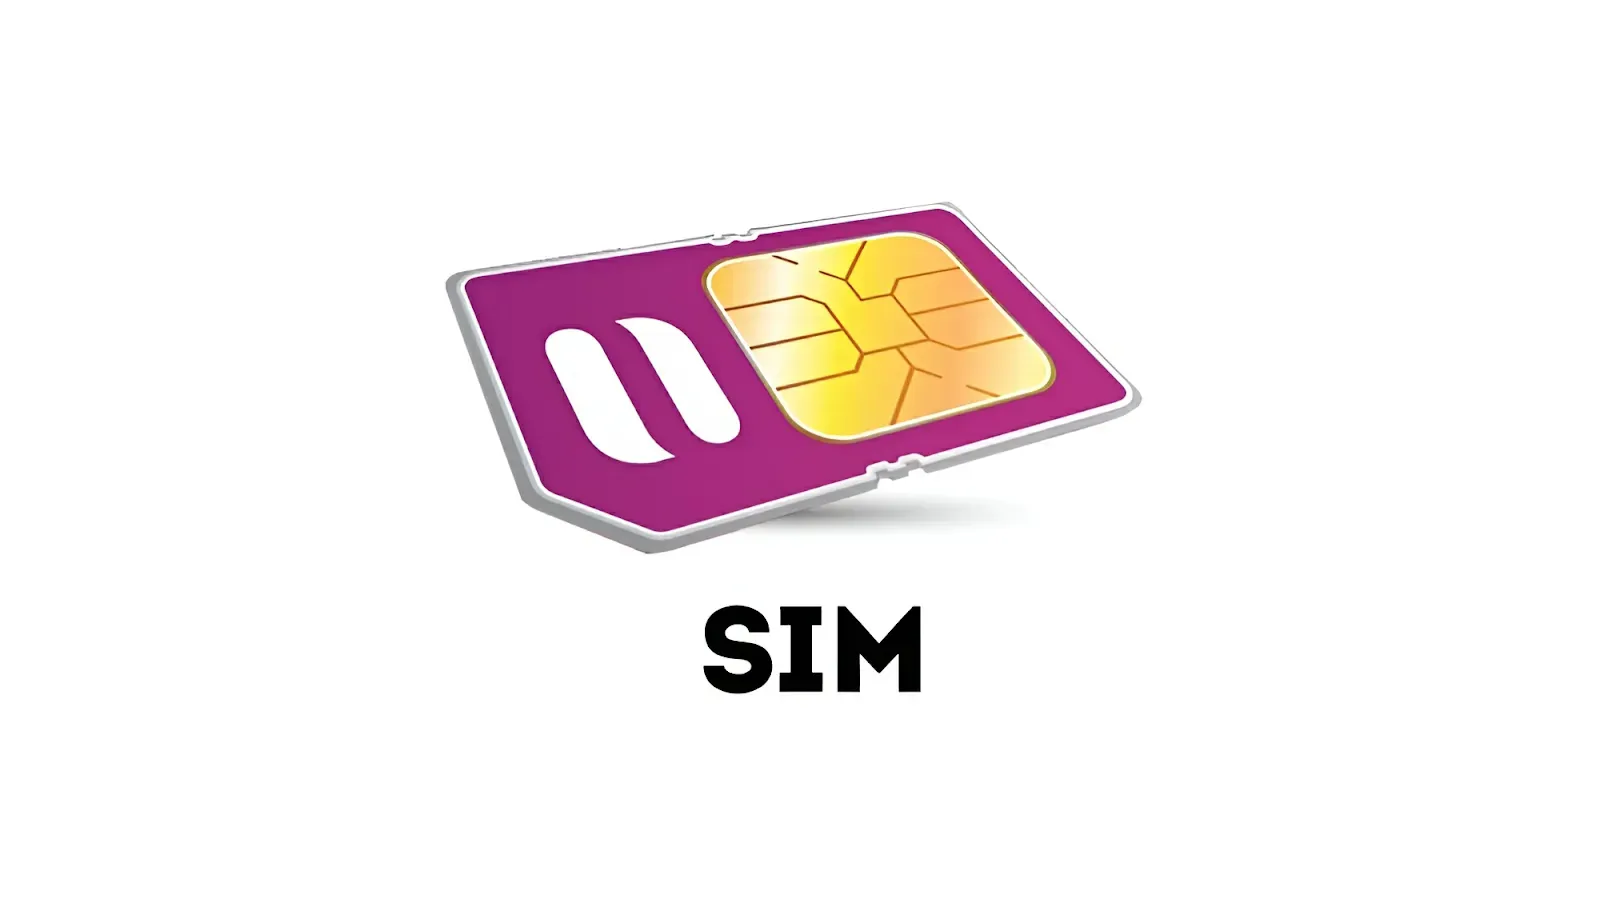 ثلاث طرق لمعرفة رقم بطاقة سيم الخاص Inwi